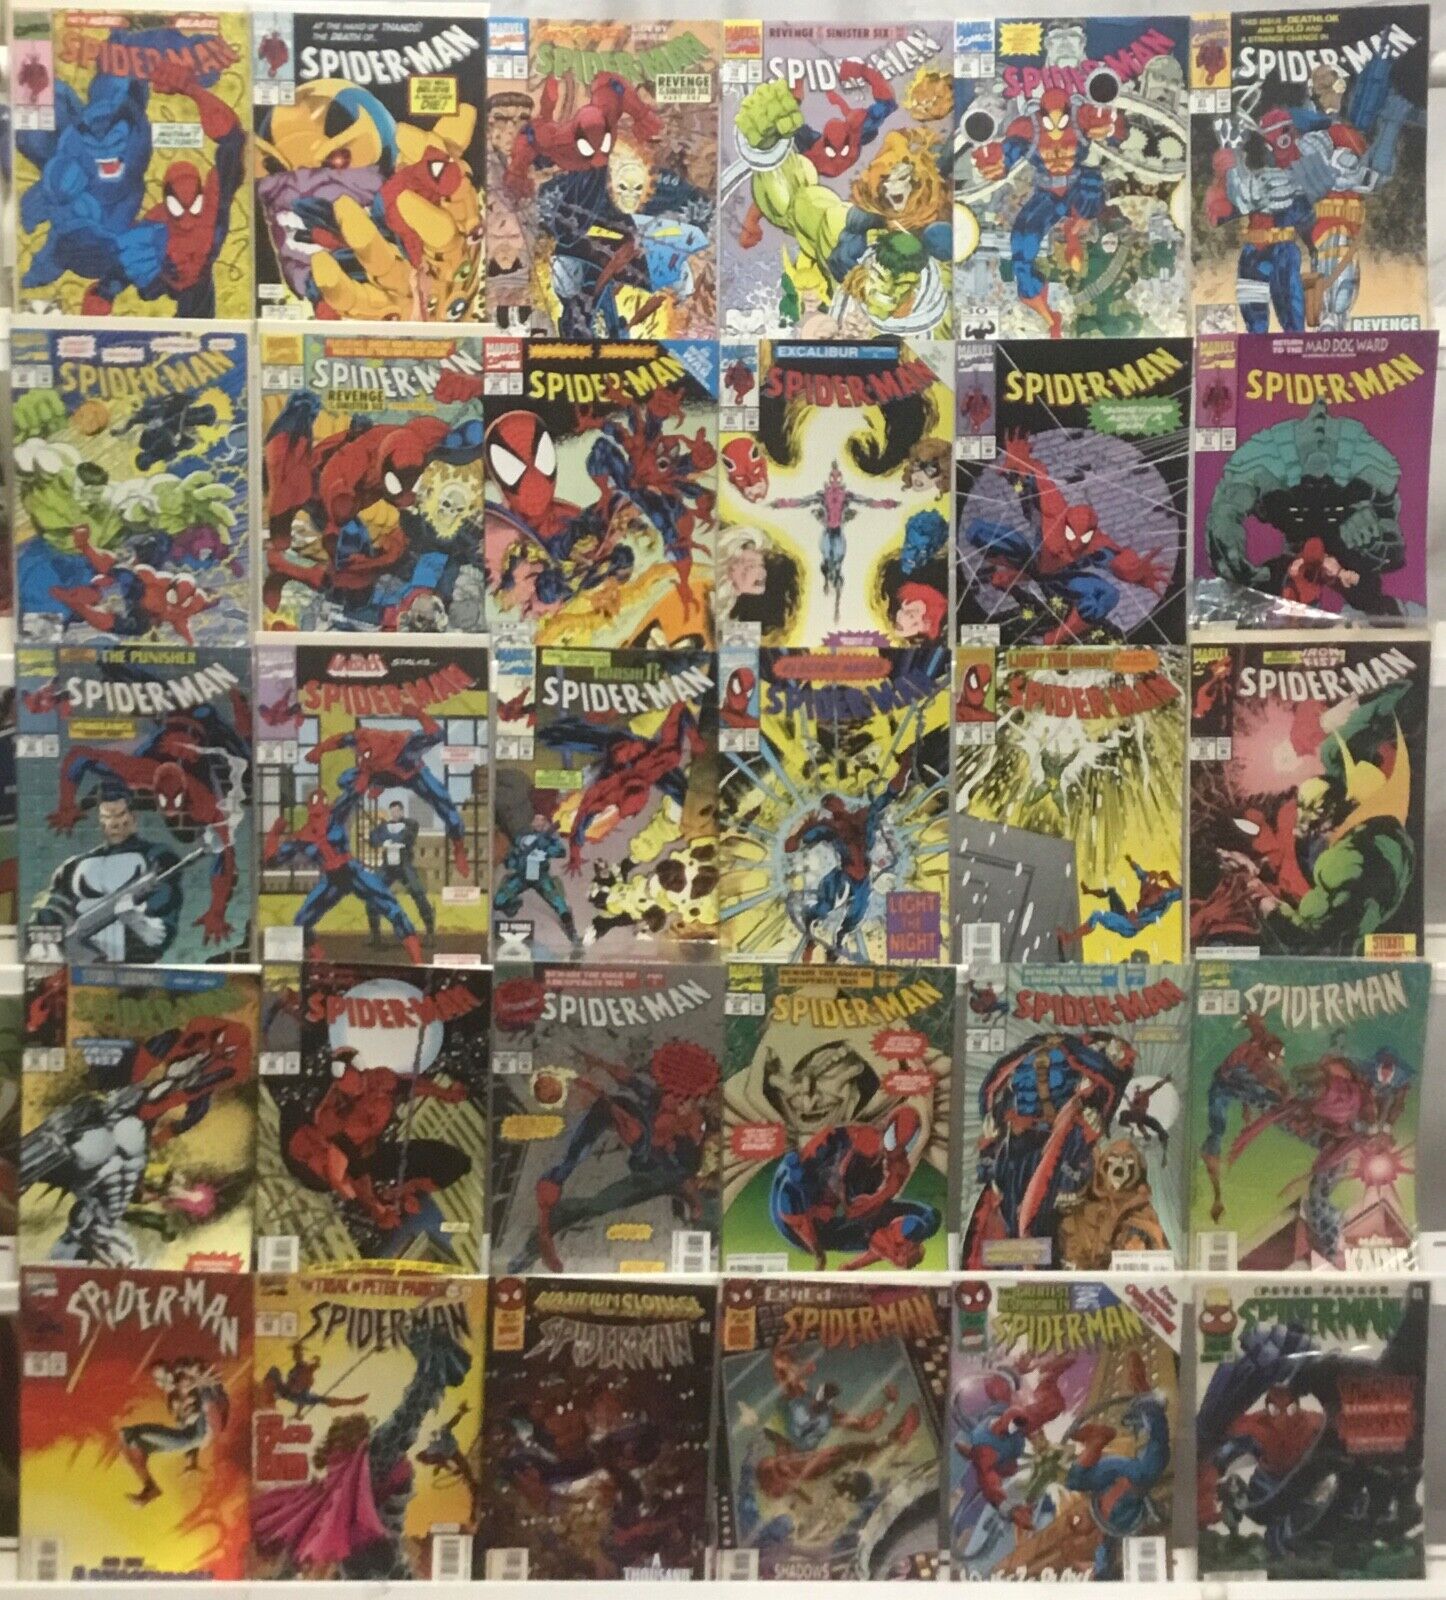 Marvel Comics - Spider-Man Vol 1 - Comic Book Lot of 30 Issues